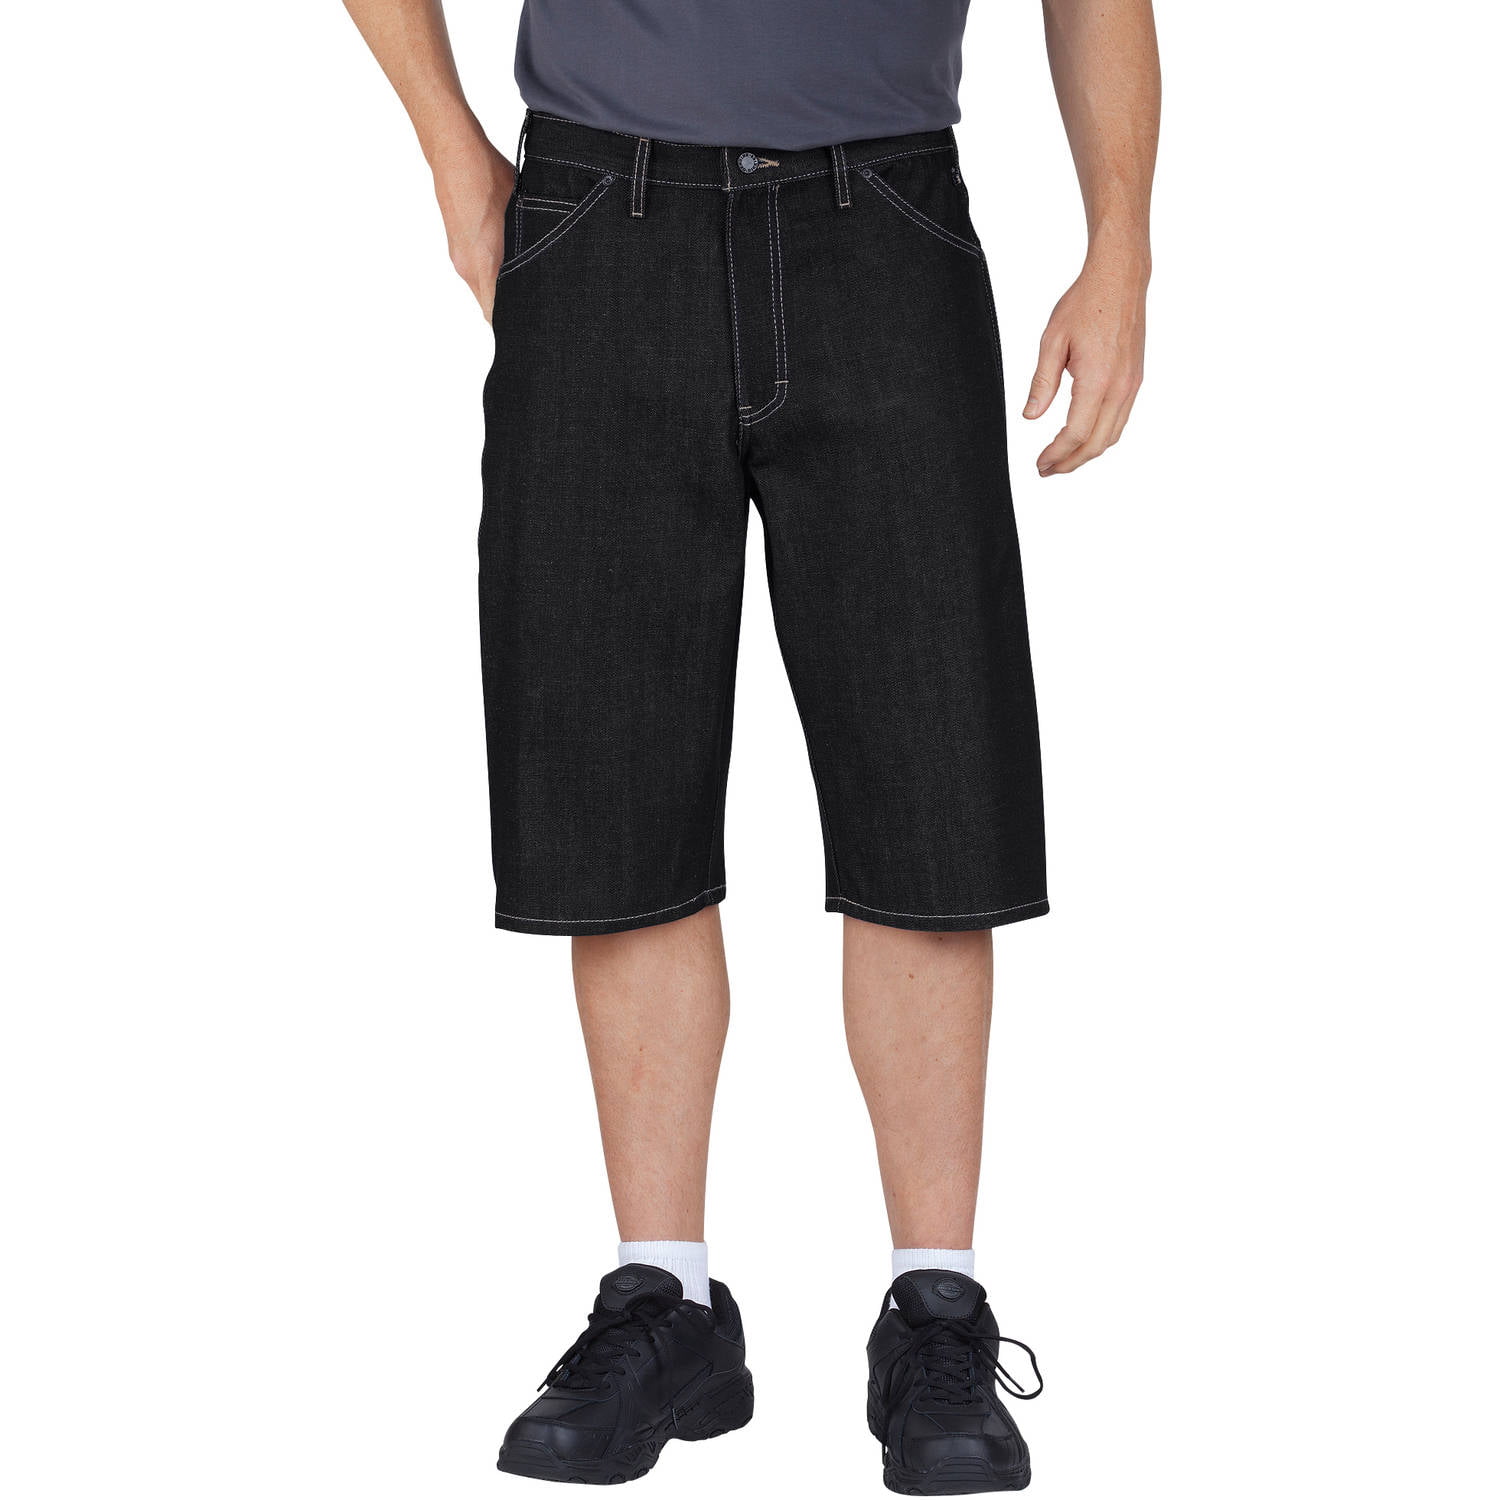 Big Men's 15 inch Loose Fit Denim Short - Walmart.com